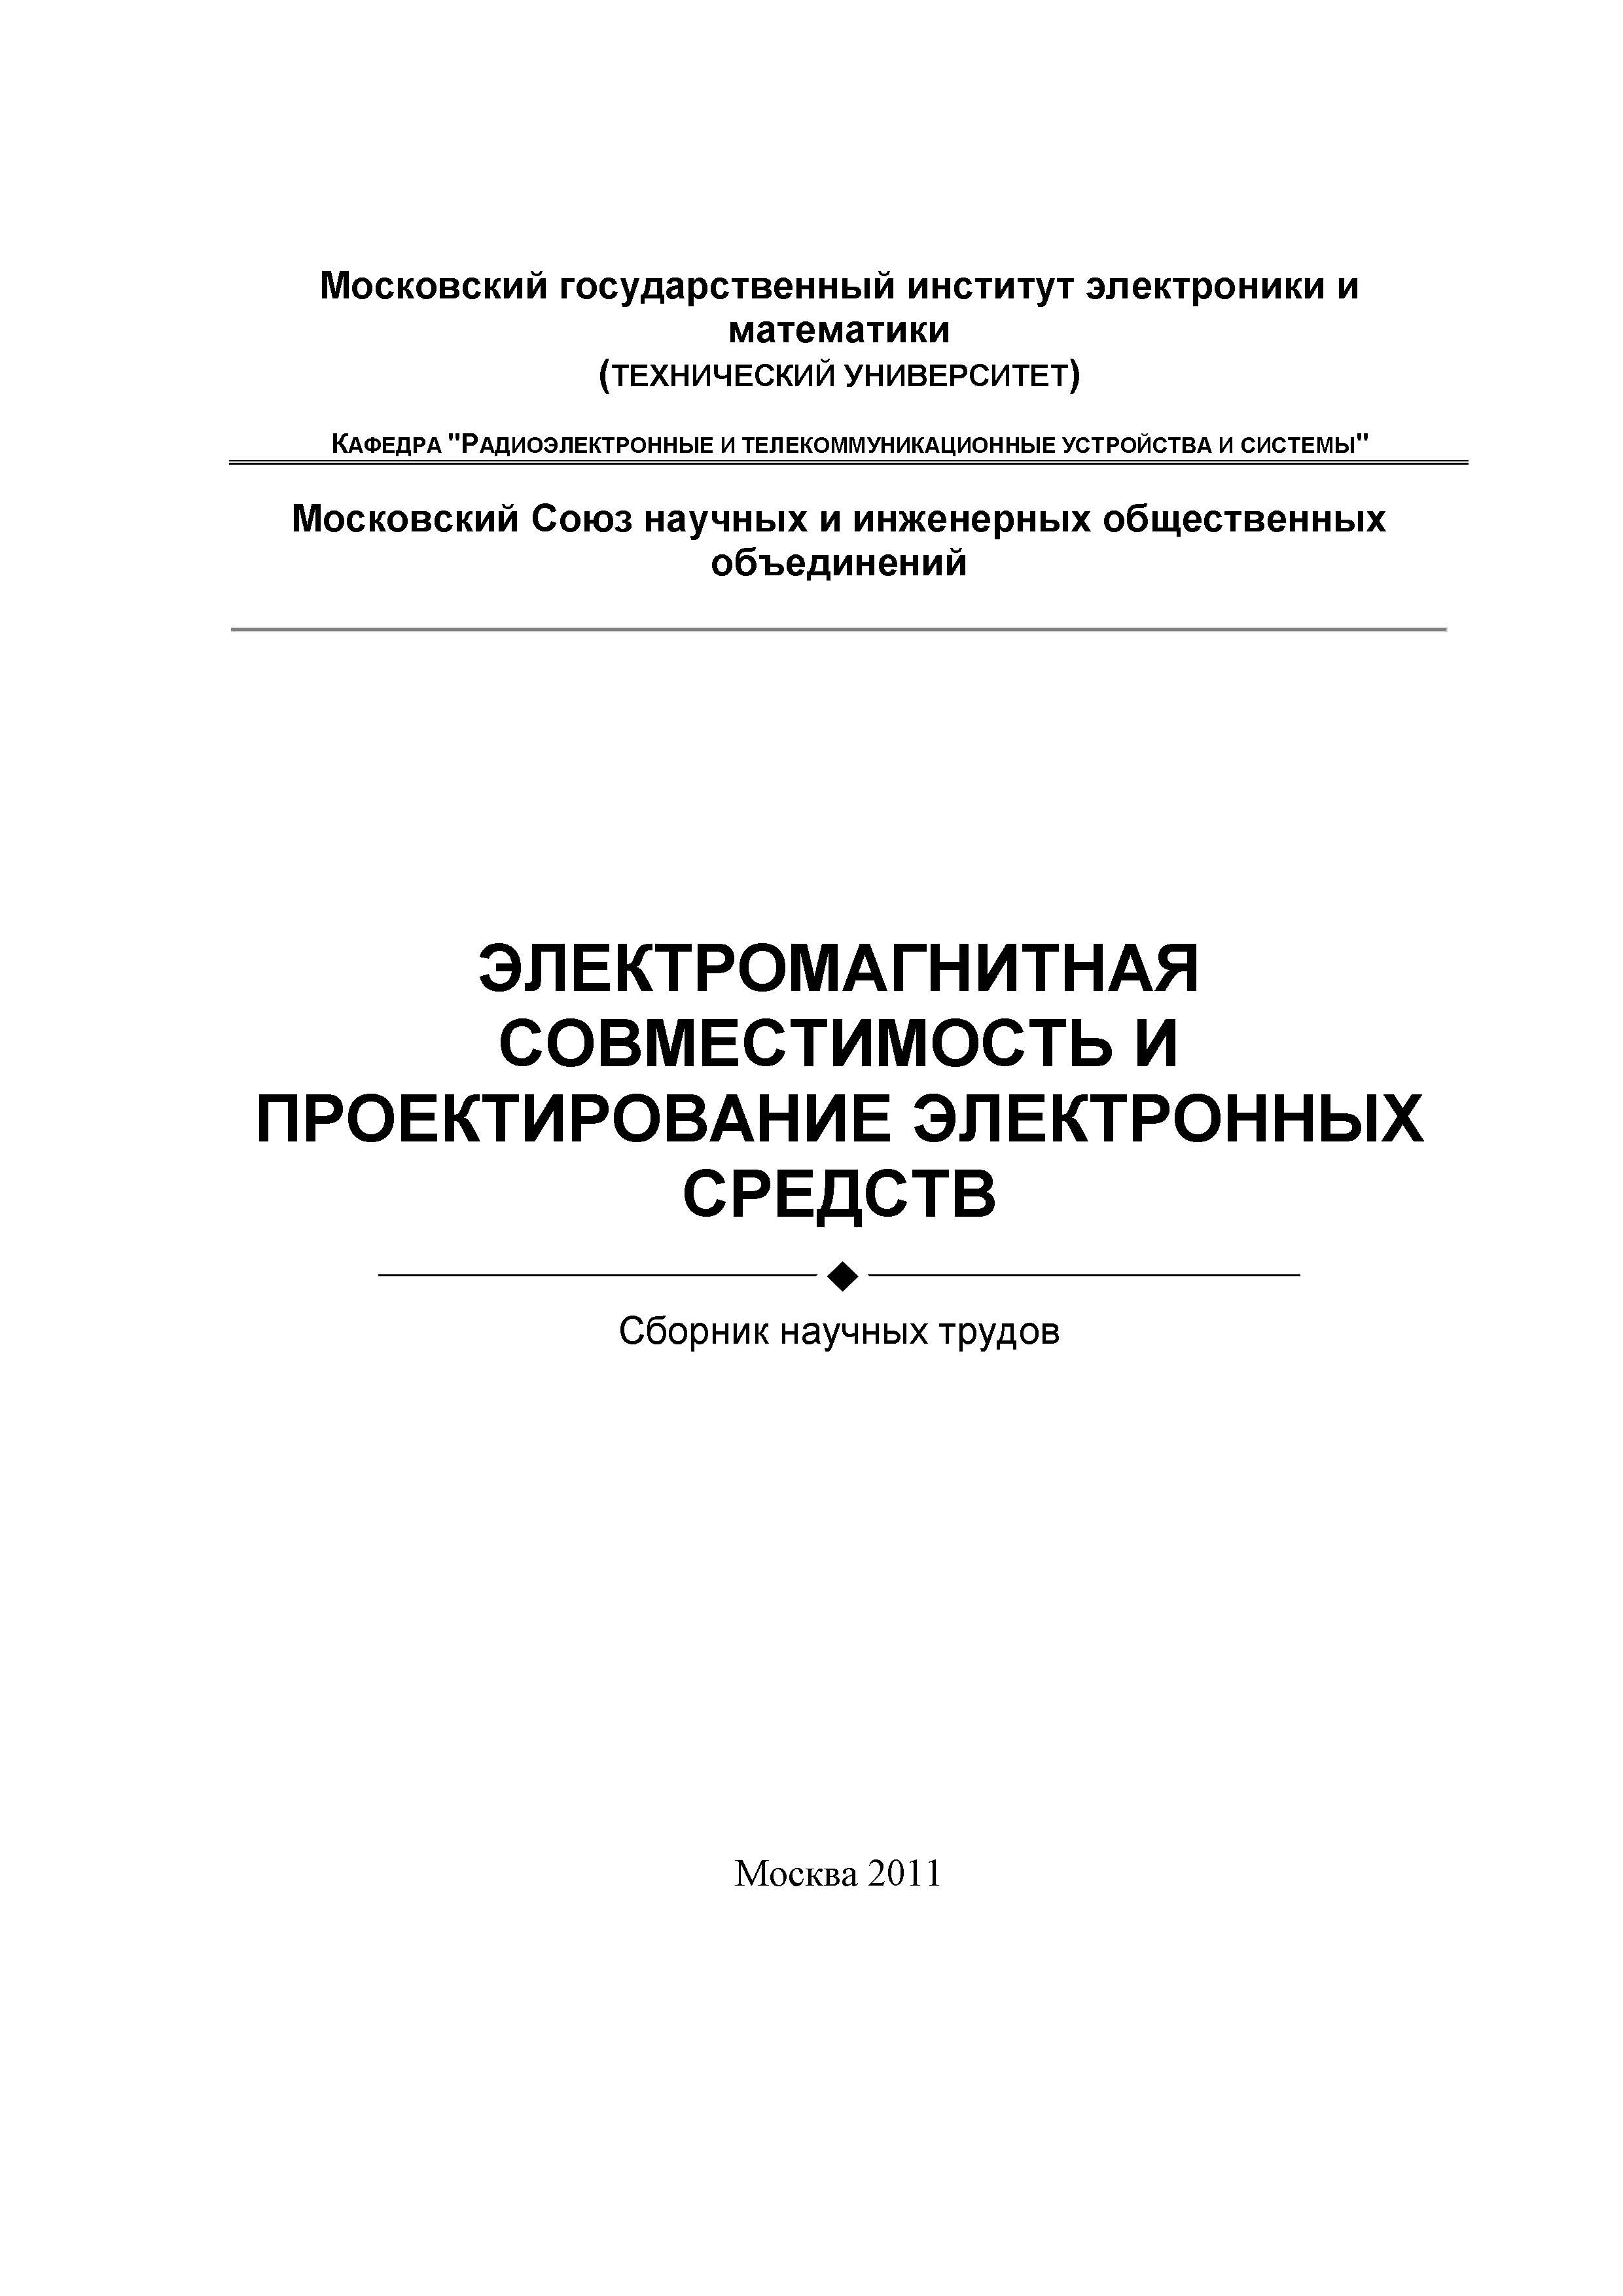 Электромагнитная совместимость и проектирование электронных средств (2011)